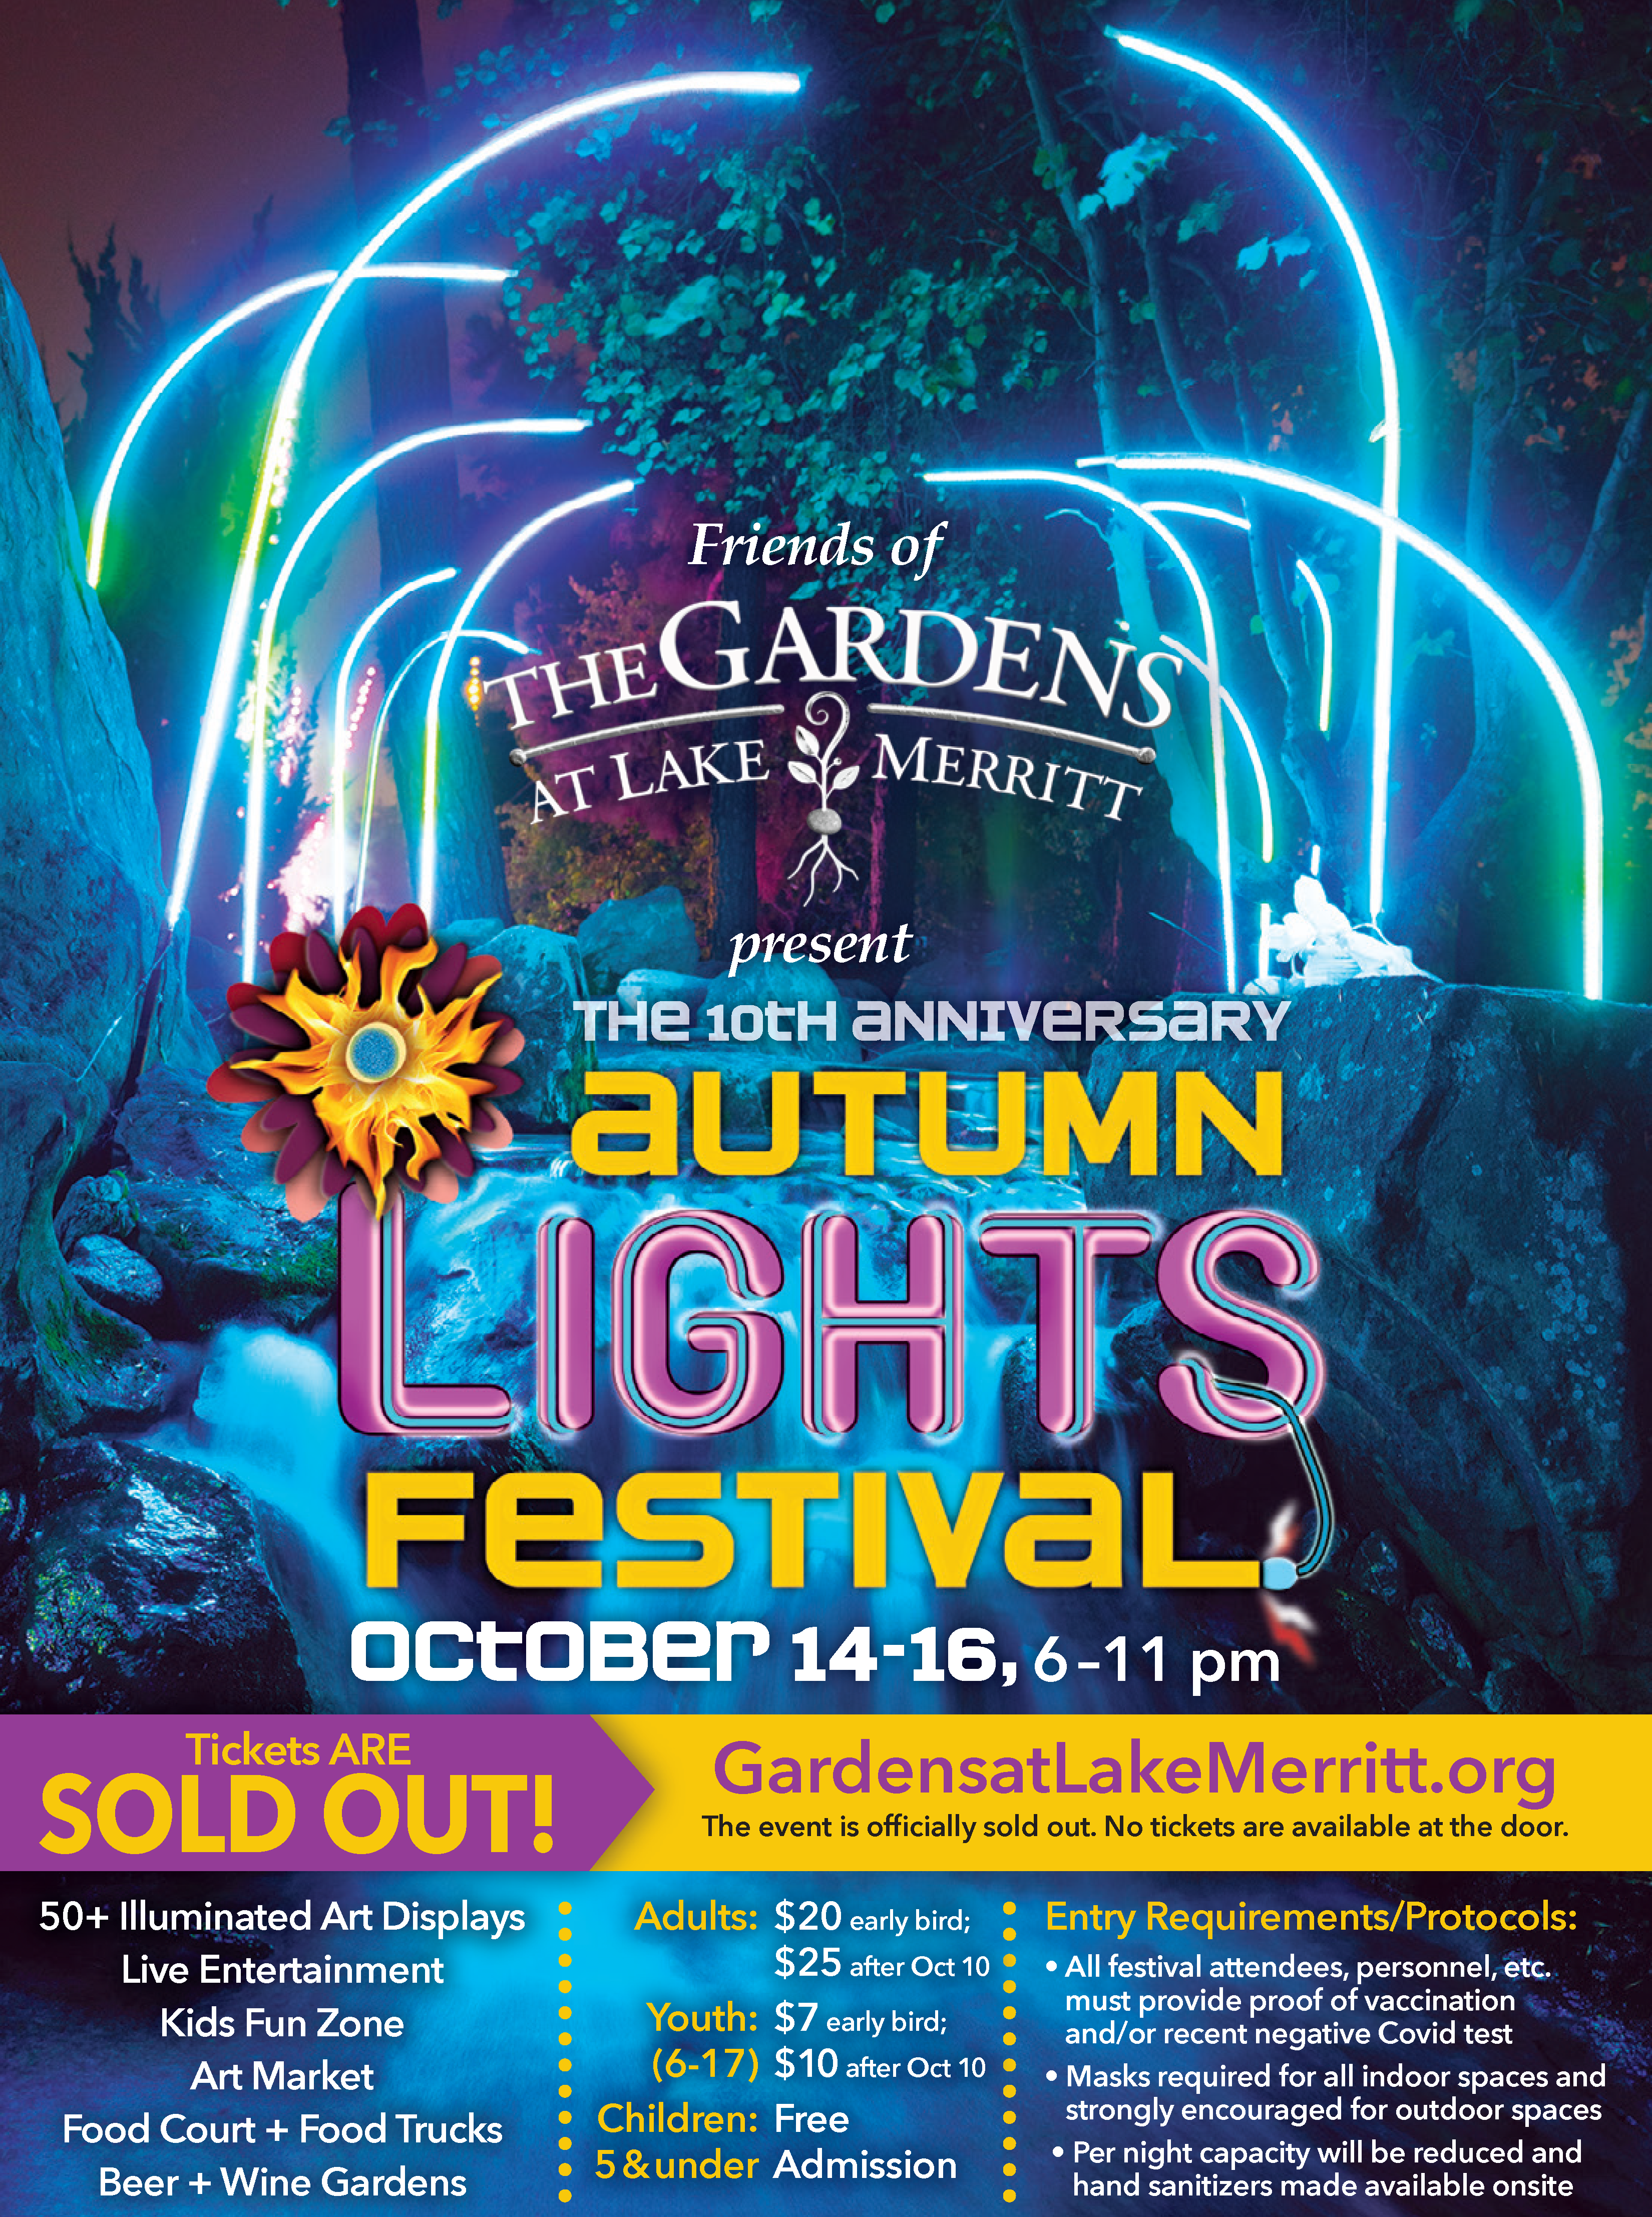 Autumn Lights Festival 2021 - The Gardens at Lake Merritt